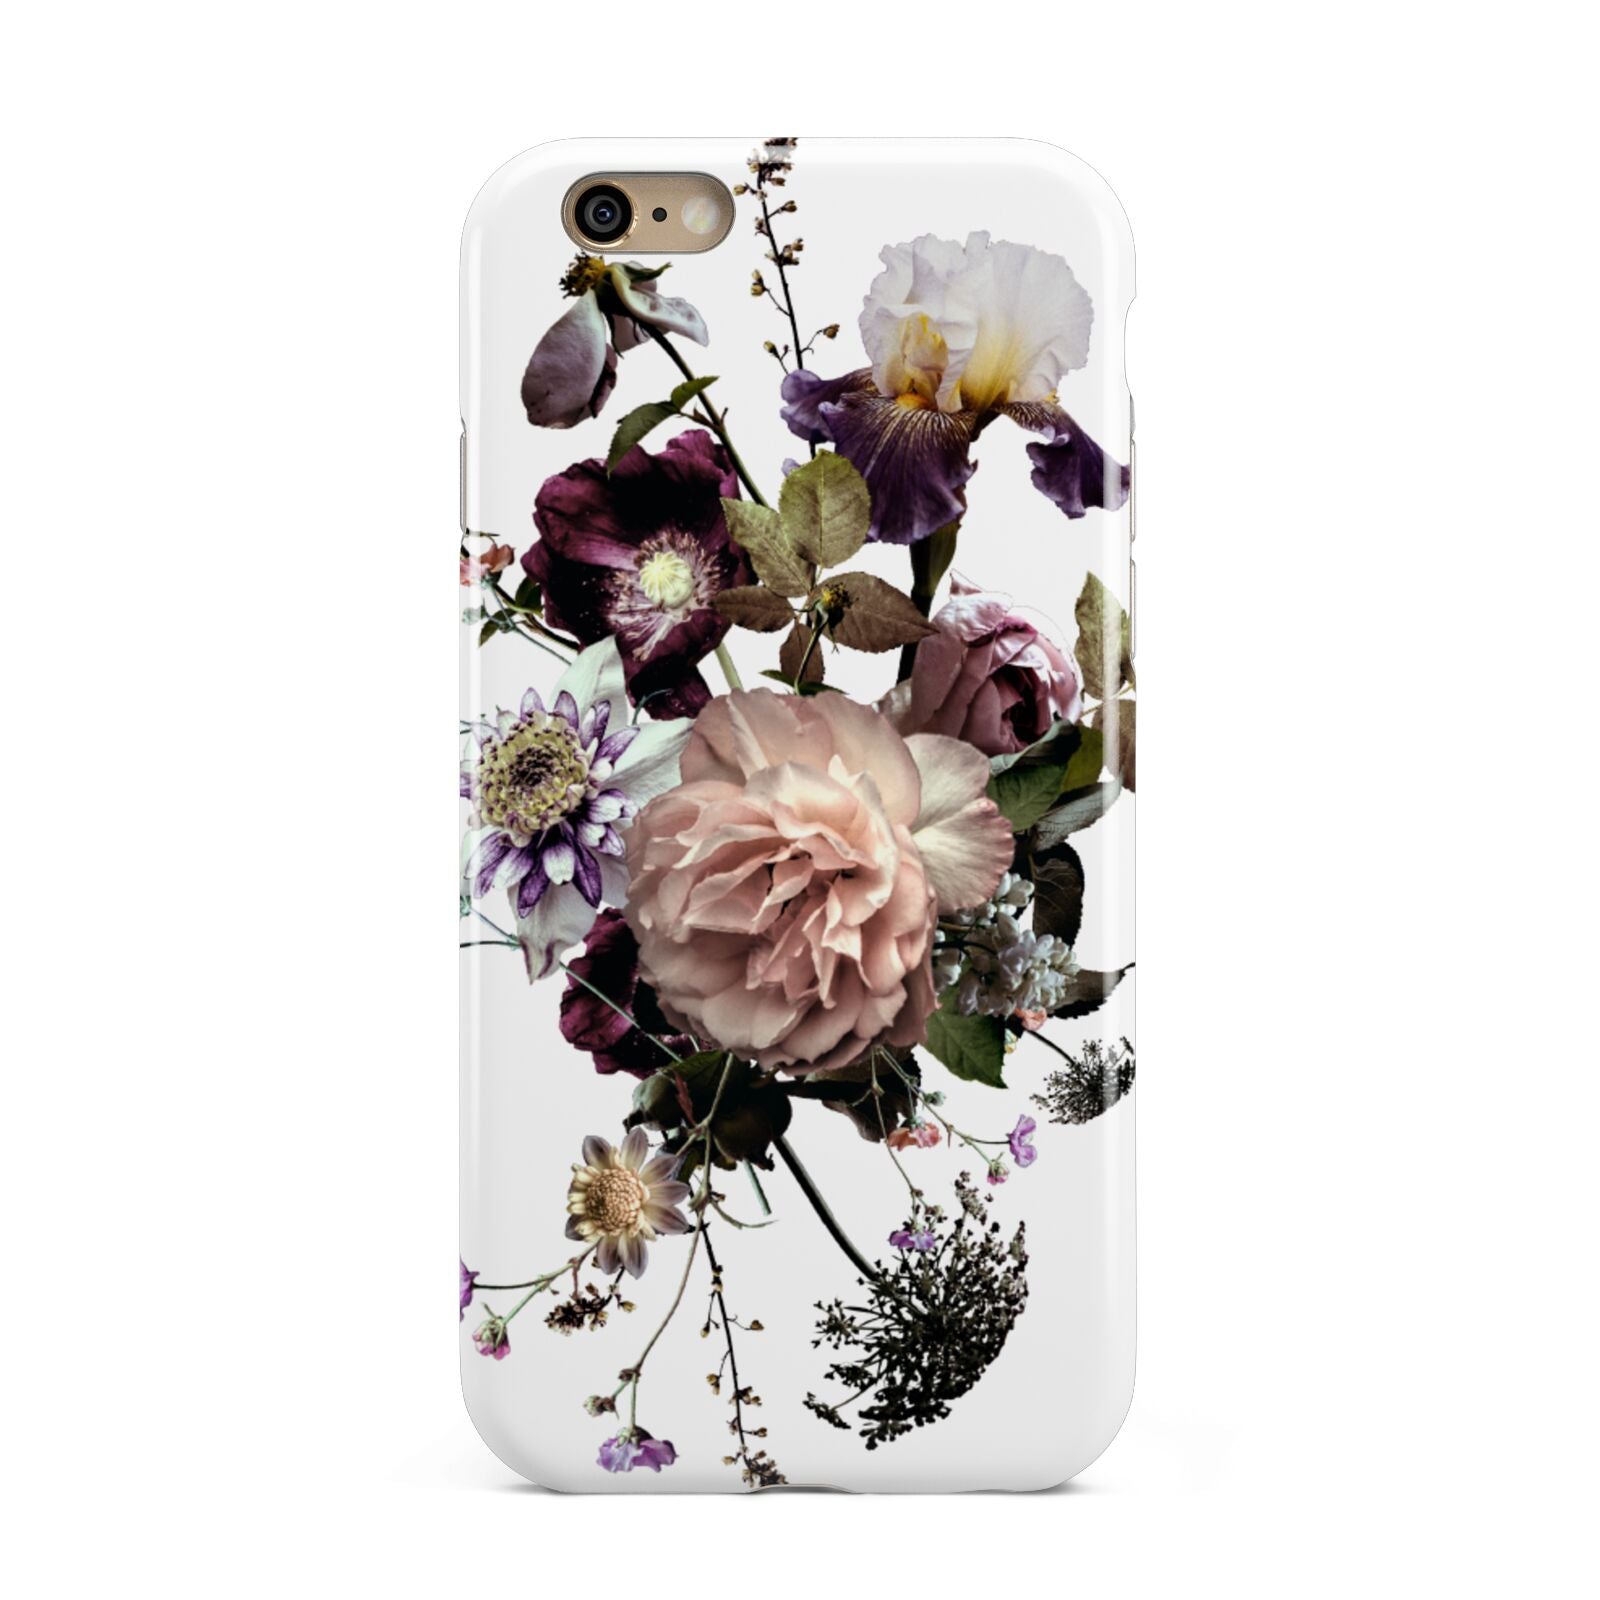 Vintage Flowers Apple iPhone 6 3D Tough Case